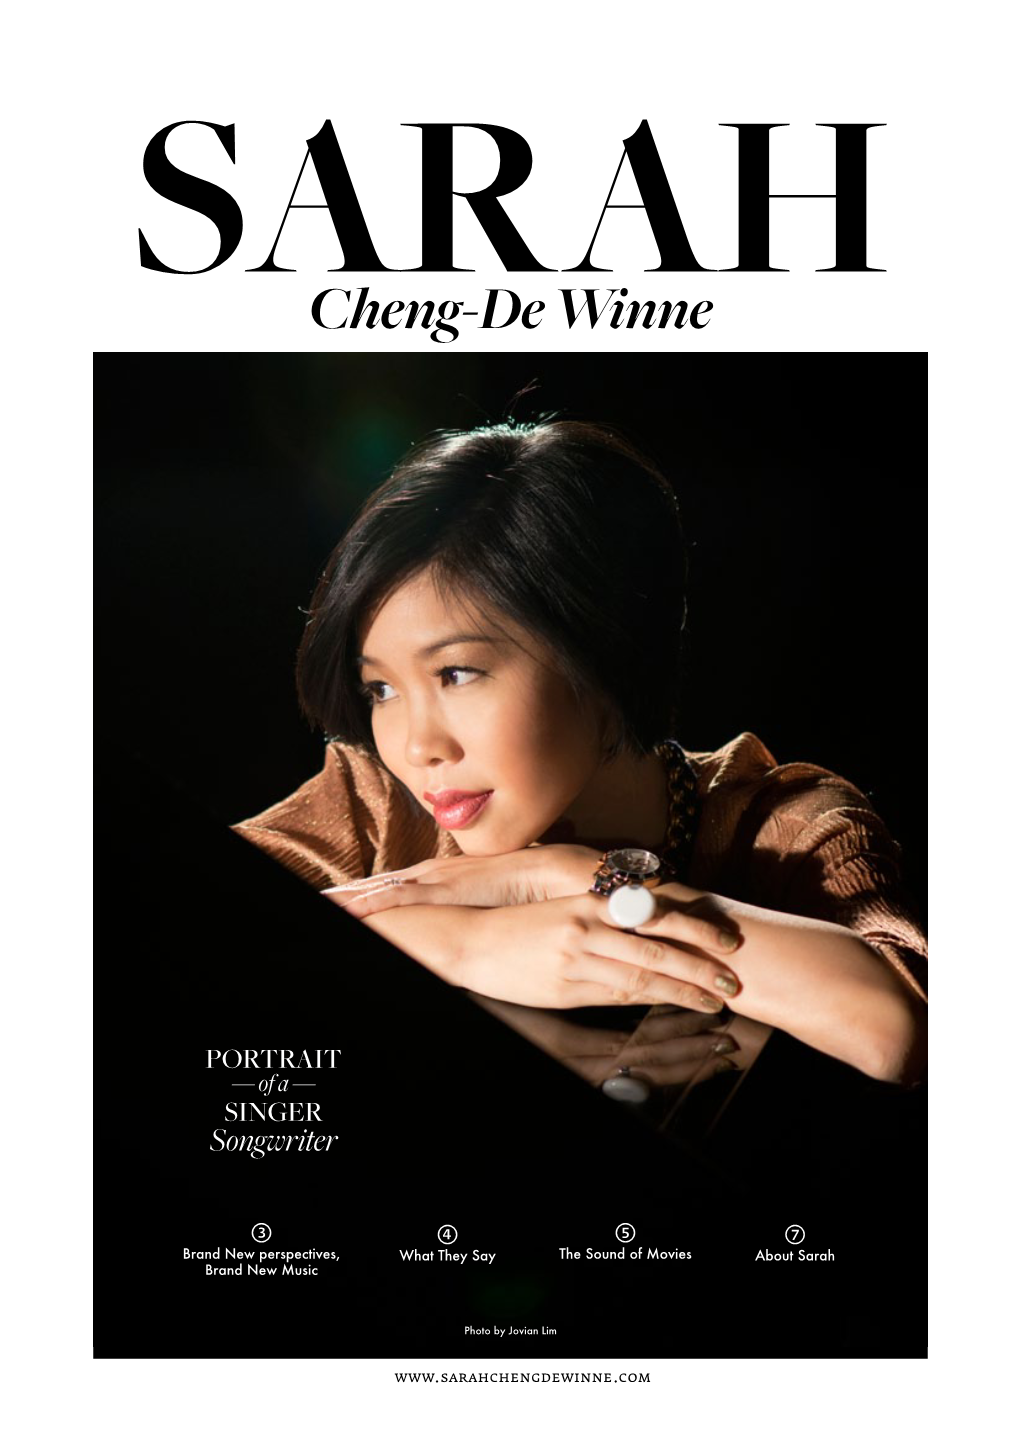 SARAH Cheng-De Winne